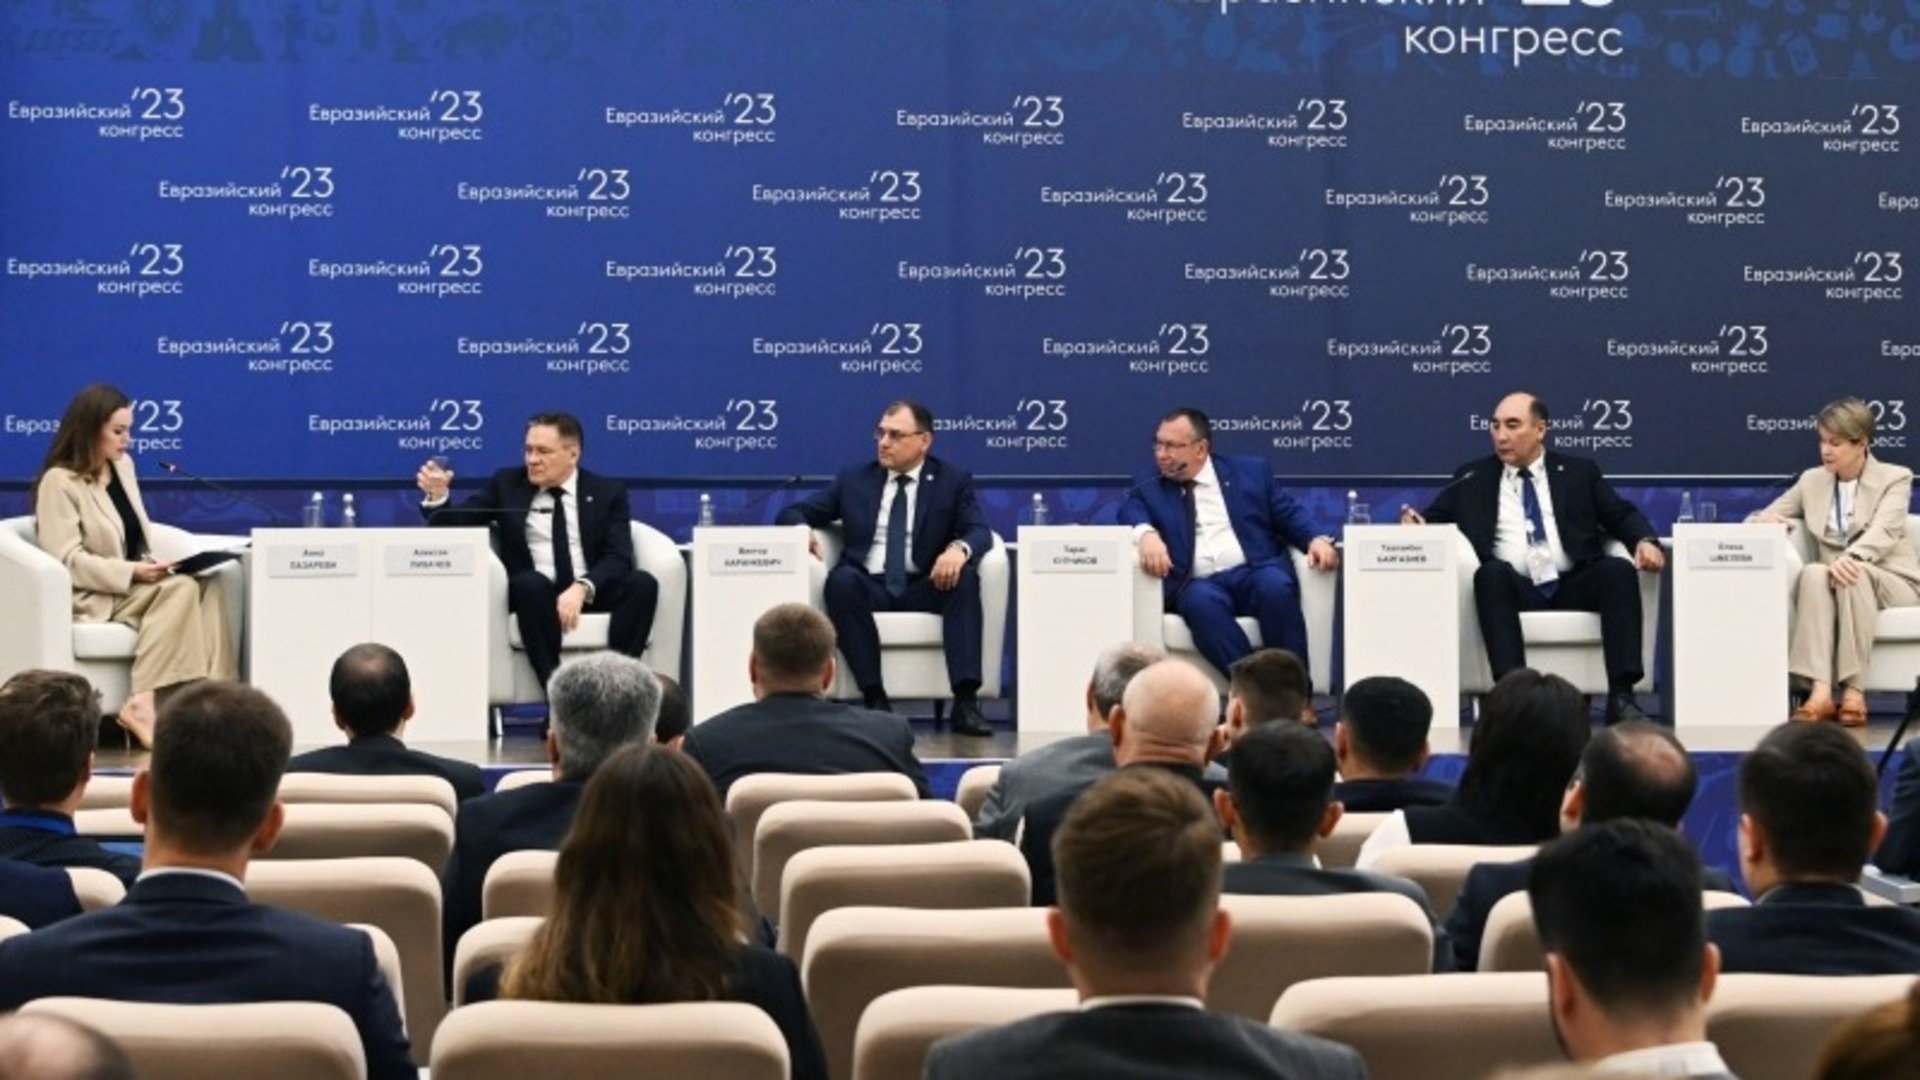 Евразийский экономический форум. III Евразийский саммит 2023. Международные мероприятия. Евразийский конгресс 2023 Сочи. Экономический форум.